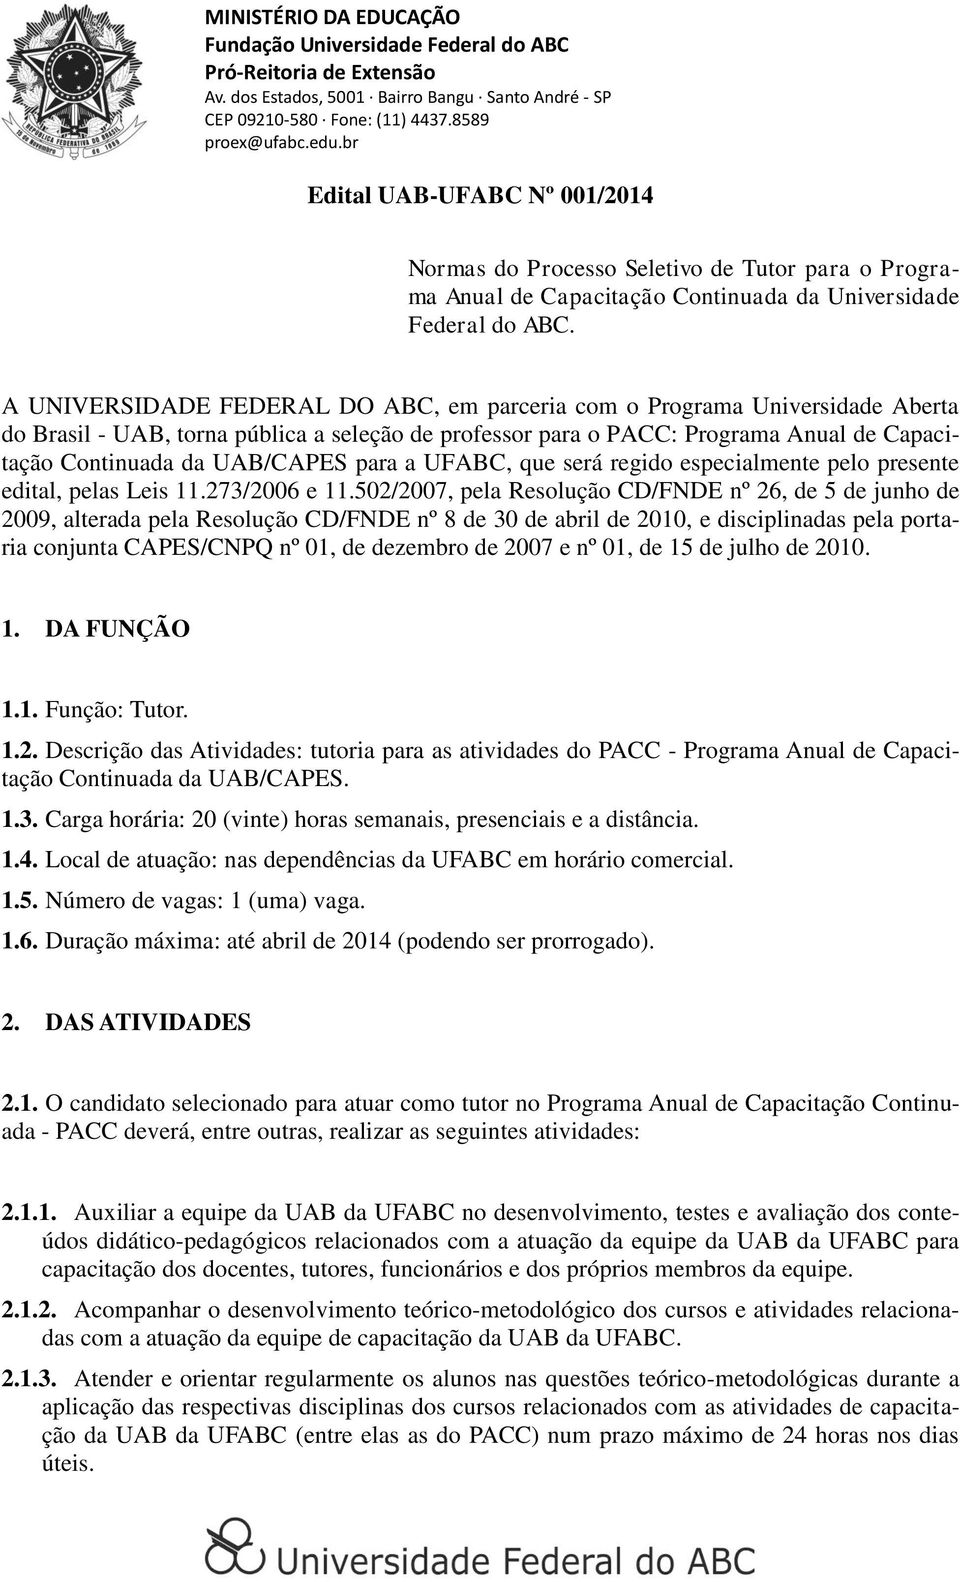 A UNIVERSIDADE FEDERAL DO ABC, em parceria com o Programa Universidade Aberta do Brasil - UAB, torna pública a seleção de professor para o PACC: Programa Anual de Capacitação Continuada da UAB/CAPES